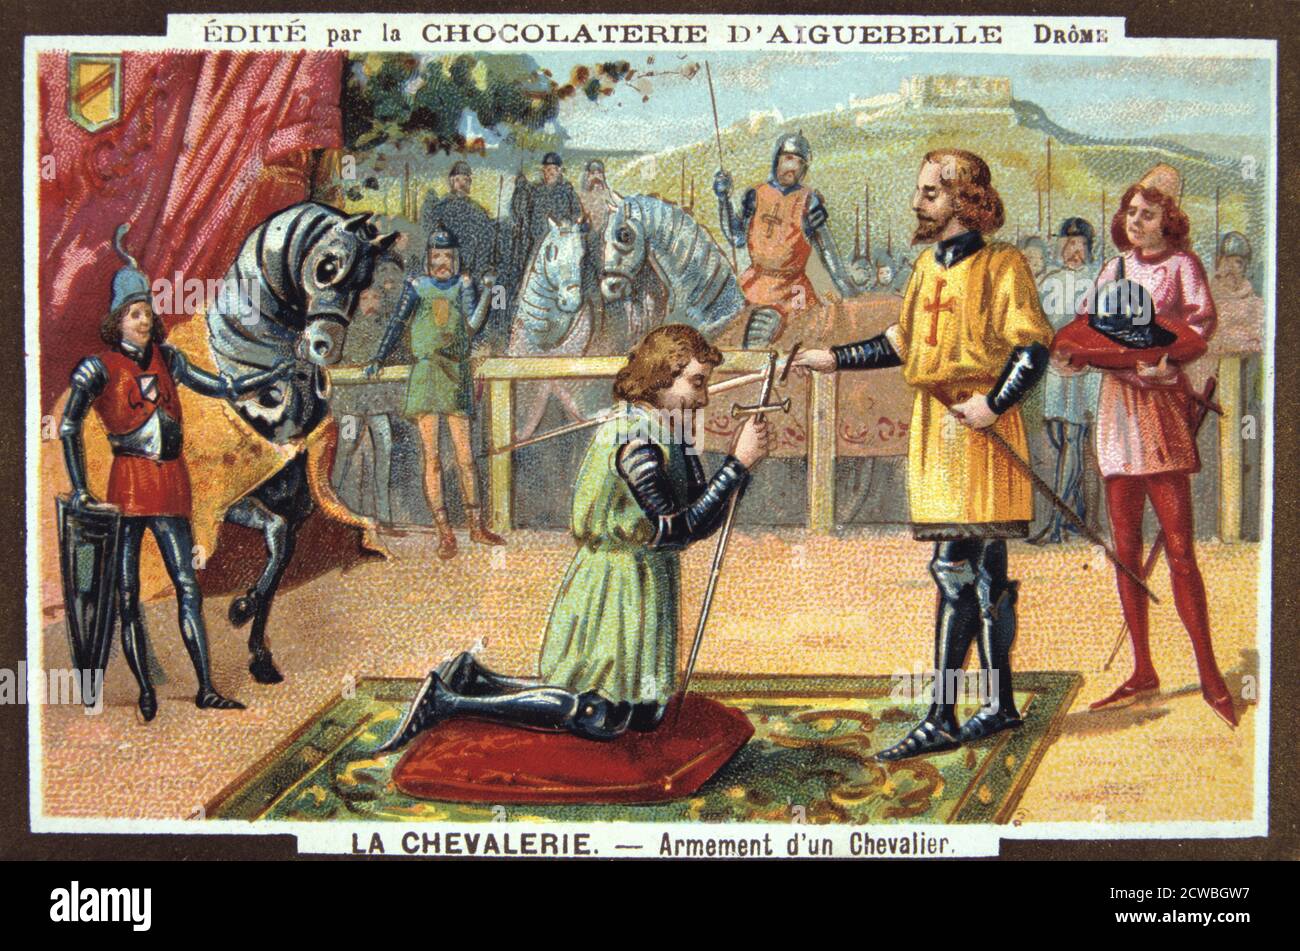 Les Chevaliers - Chevalier Knighting, Moyen-Âge. 19e siècle. Lithographie en couleur. Collection privée. Banque D'Images